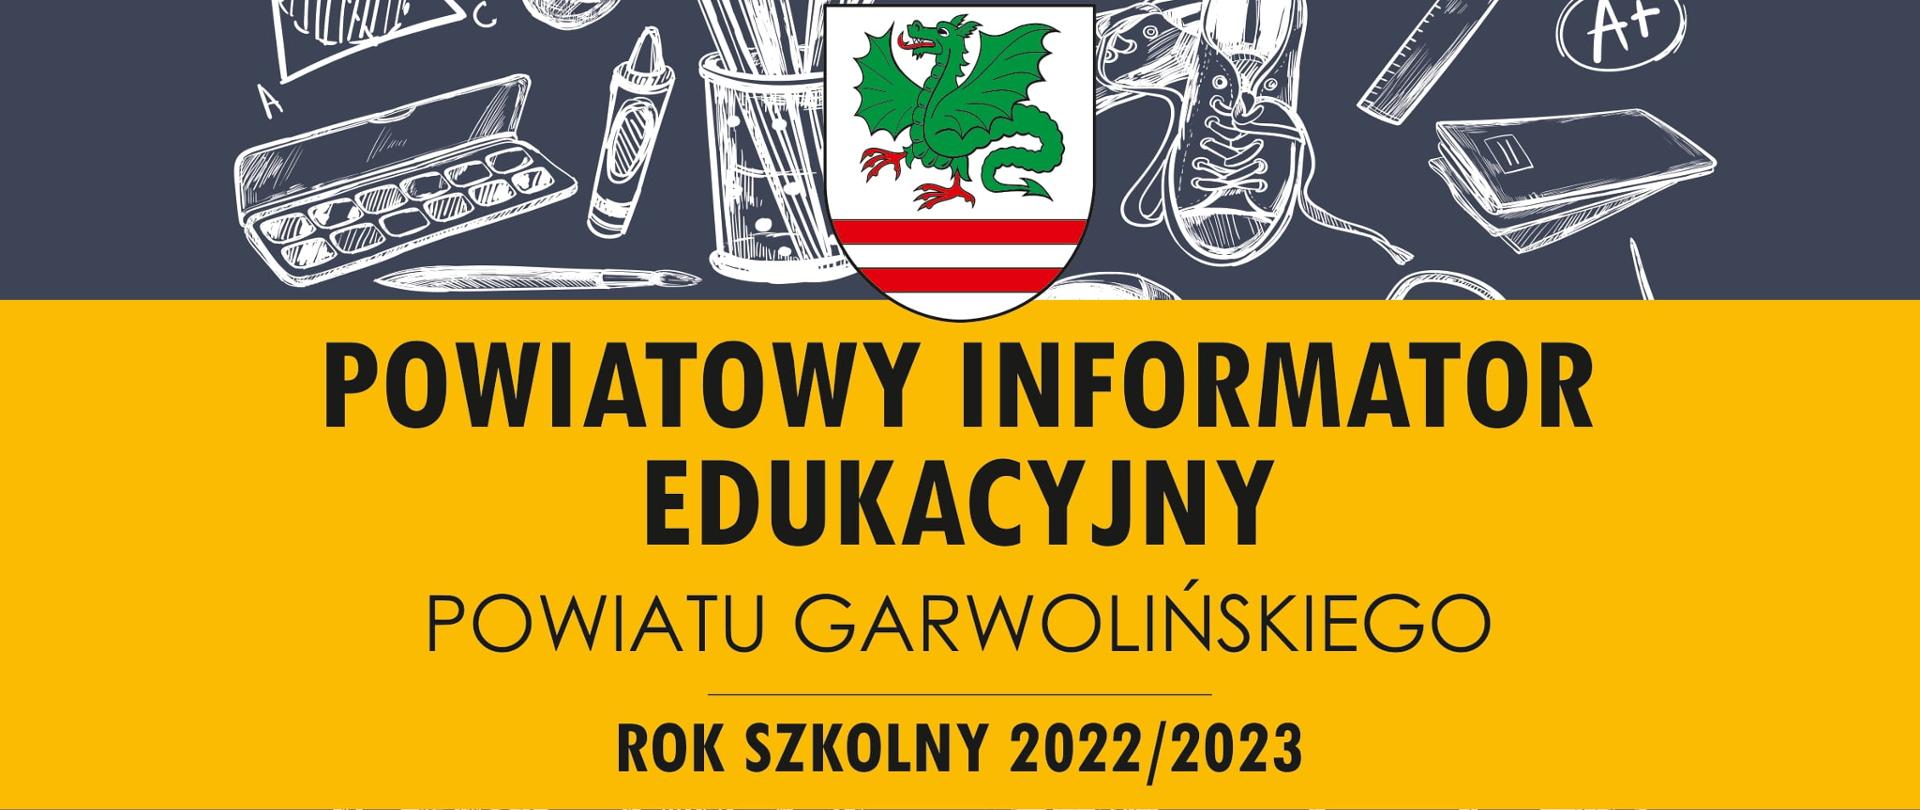 Powiatowy Informator Edukacyjny 2022/2023